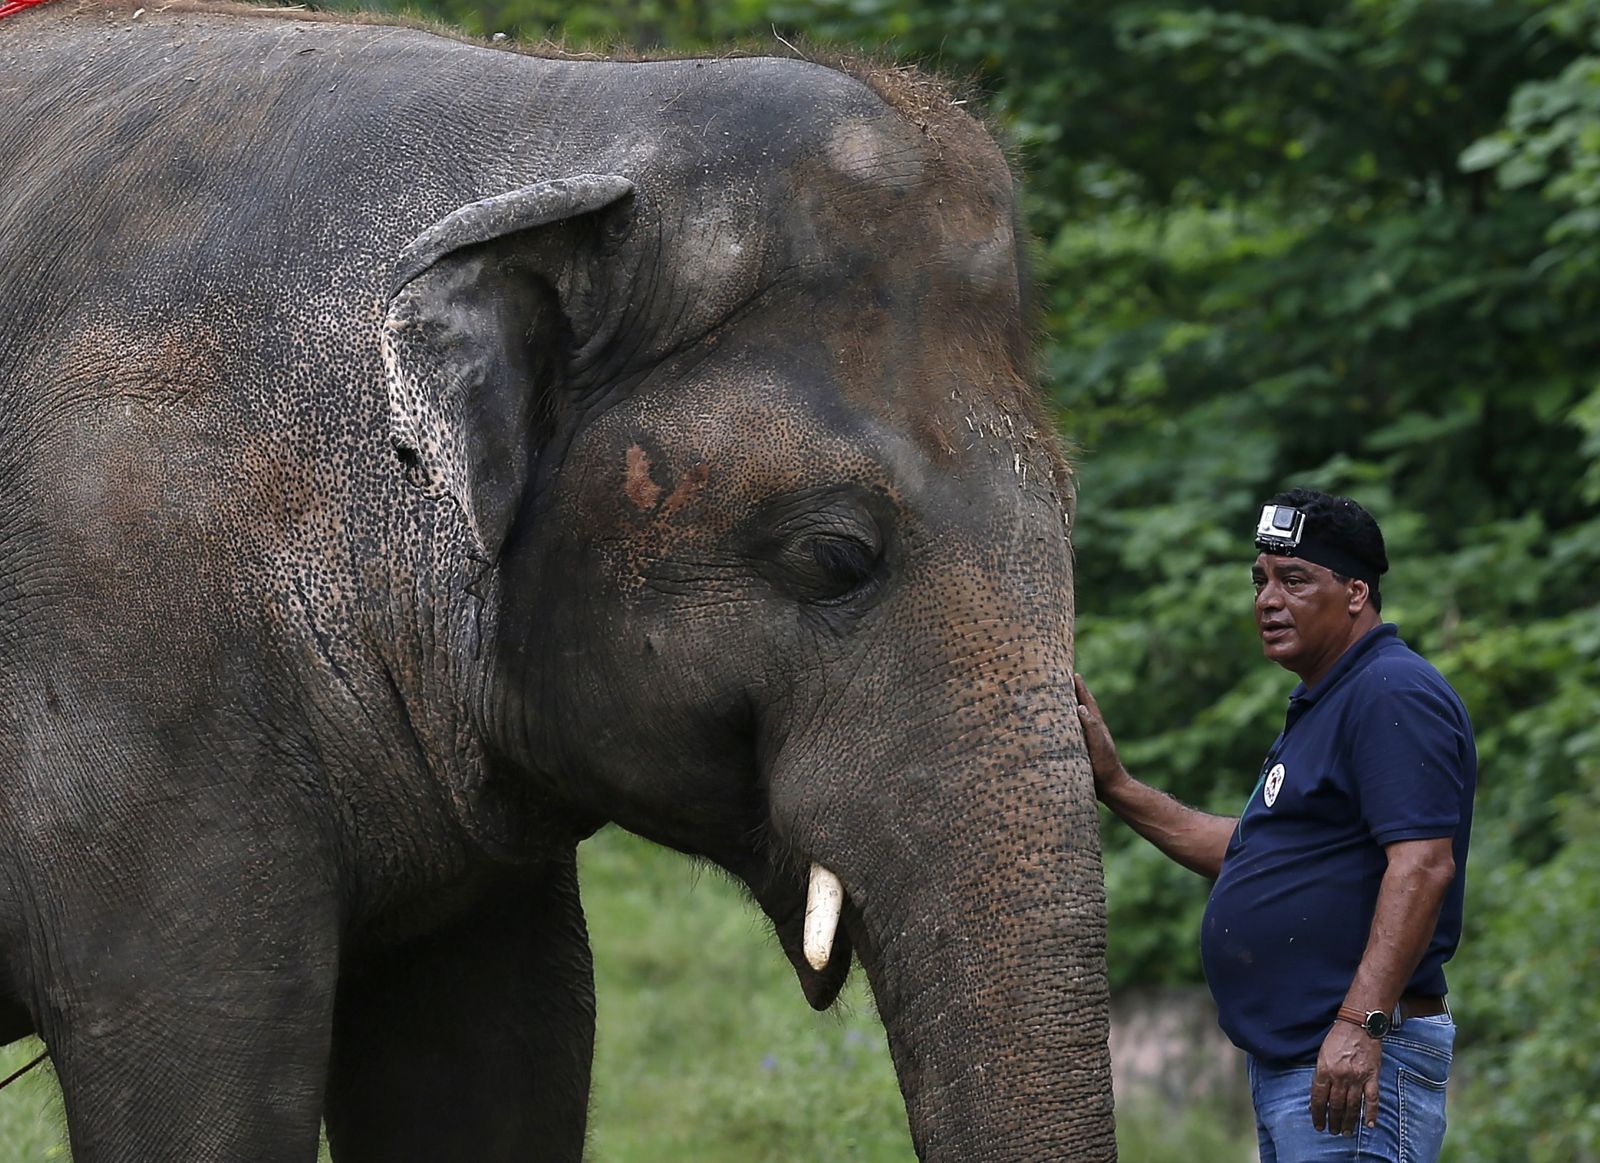 Najosamelejší slon na svete môže po 35 rokoch v ZOO konečne zažiť slobodu a divočinu